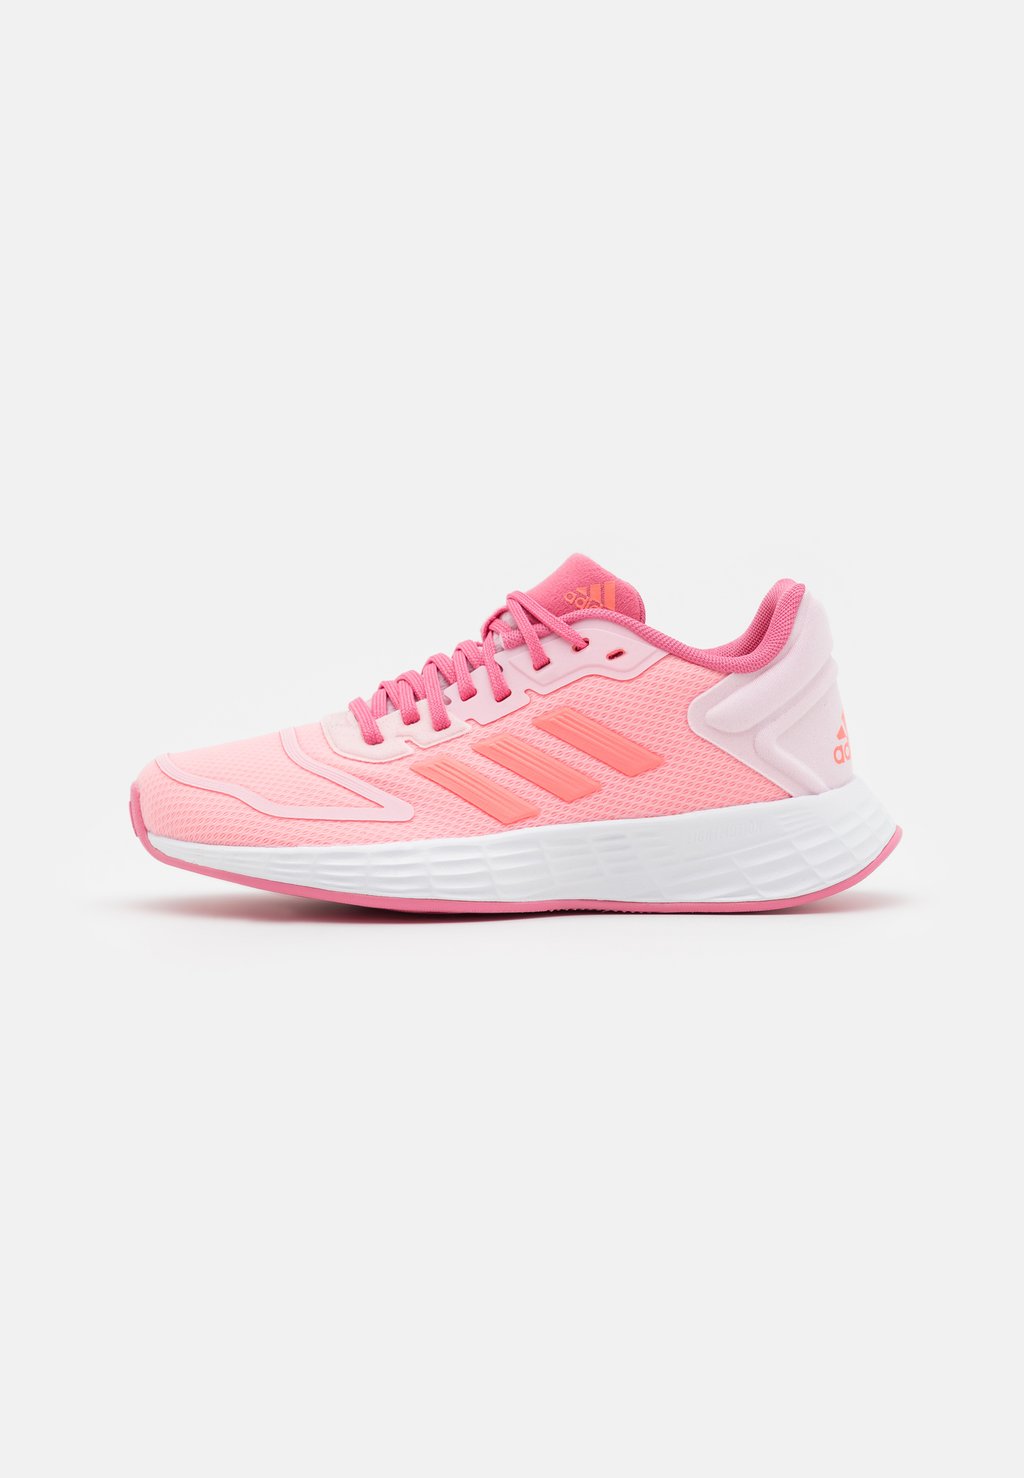 Нейтральные кроссовки Duramo 10 Unisex Adidas, цвет clear pink/acid red/rose tone